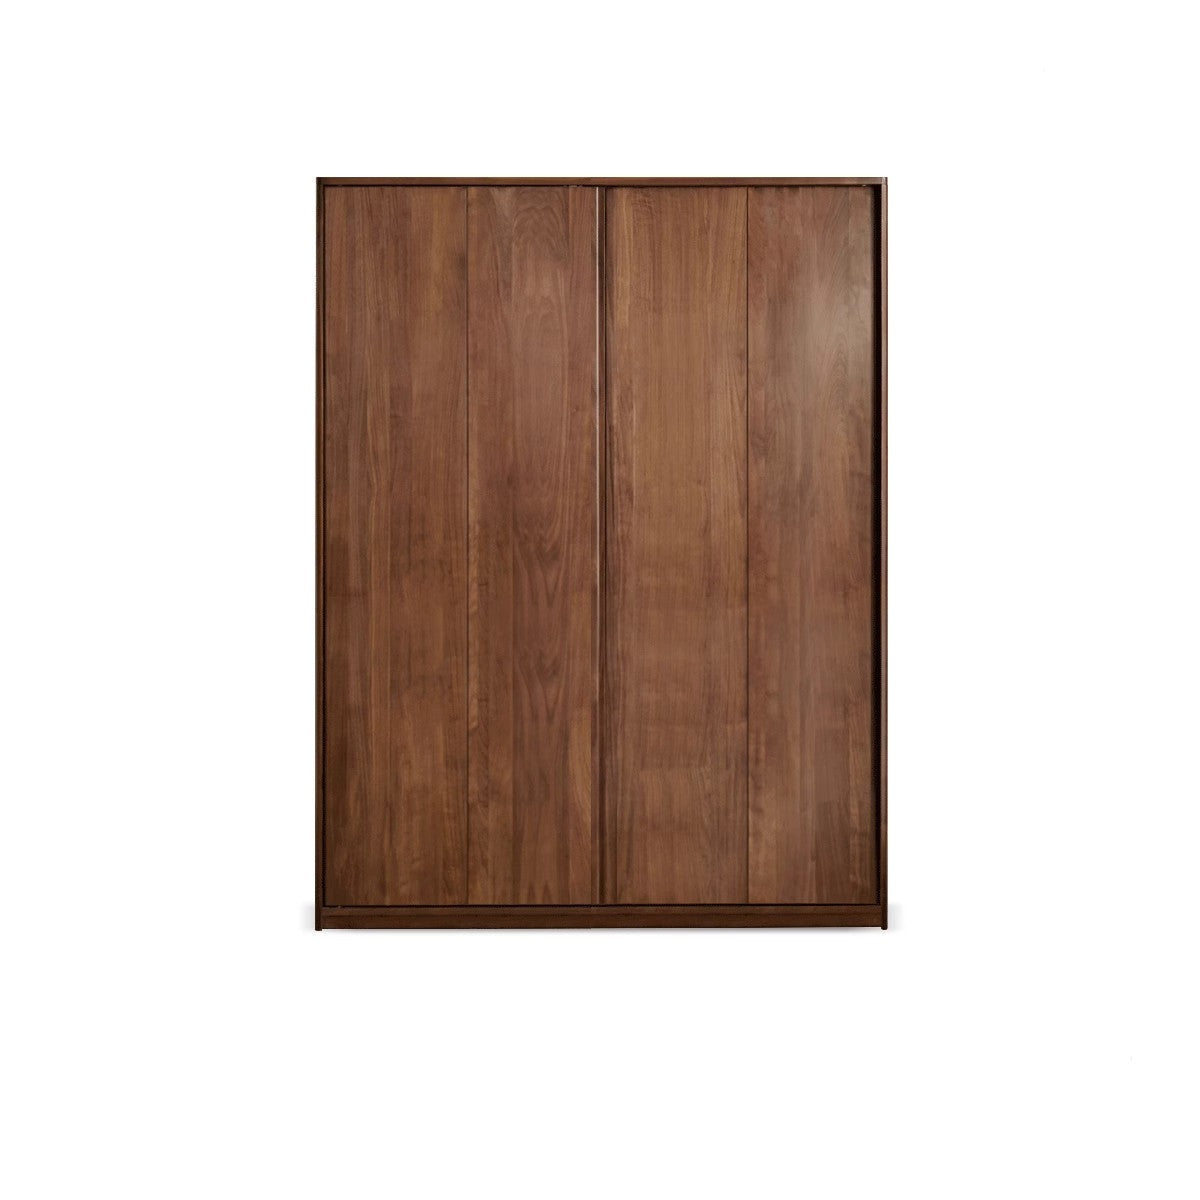 Black Walnut solid wood sliding door wardrobe"